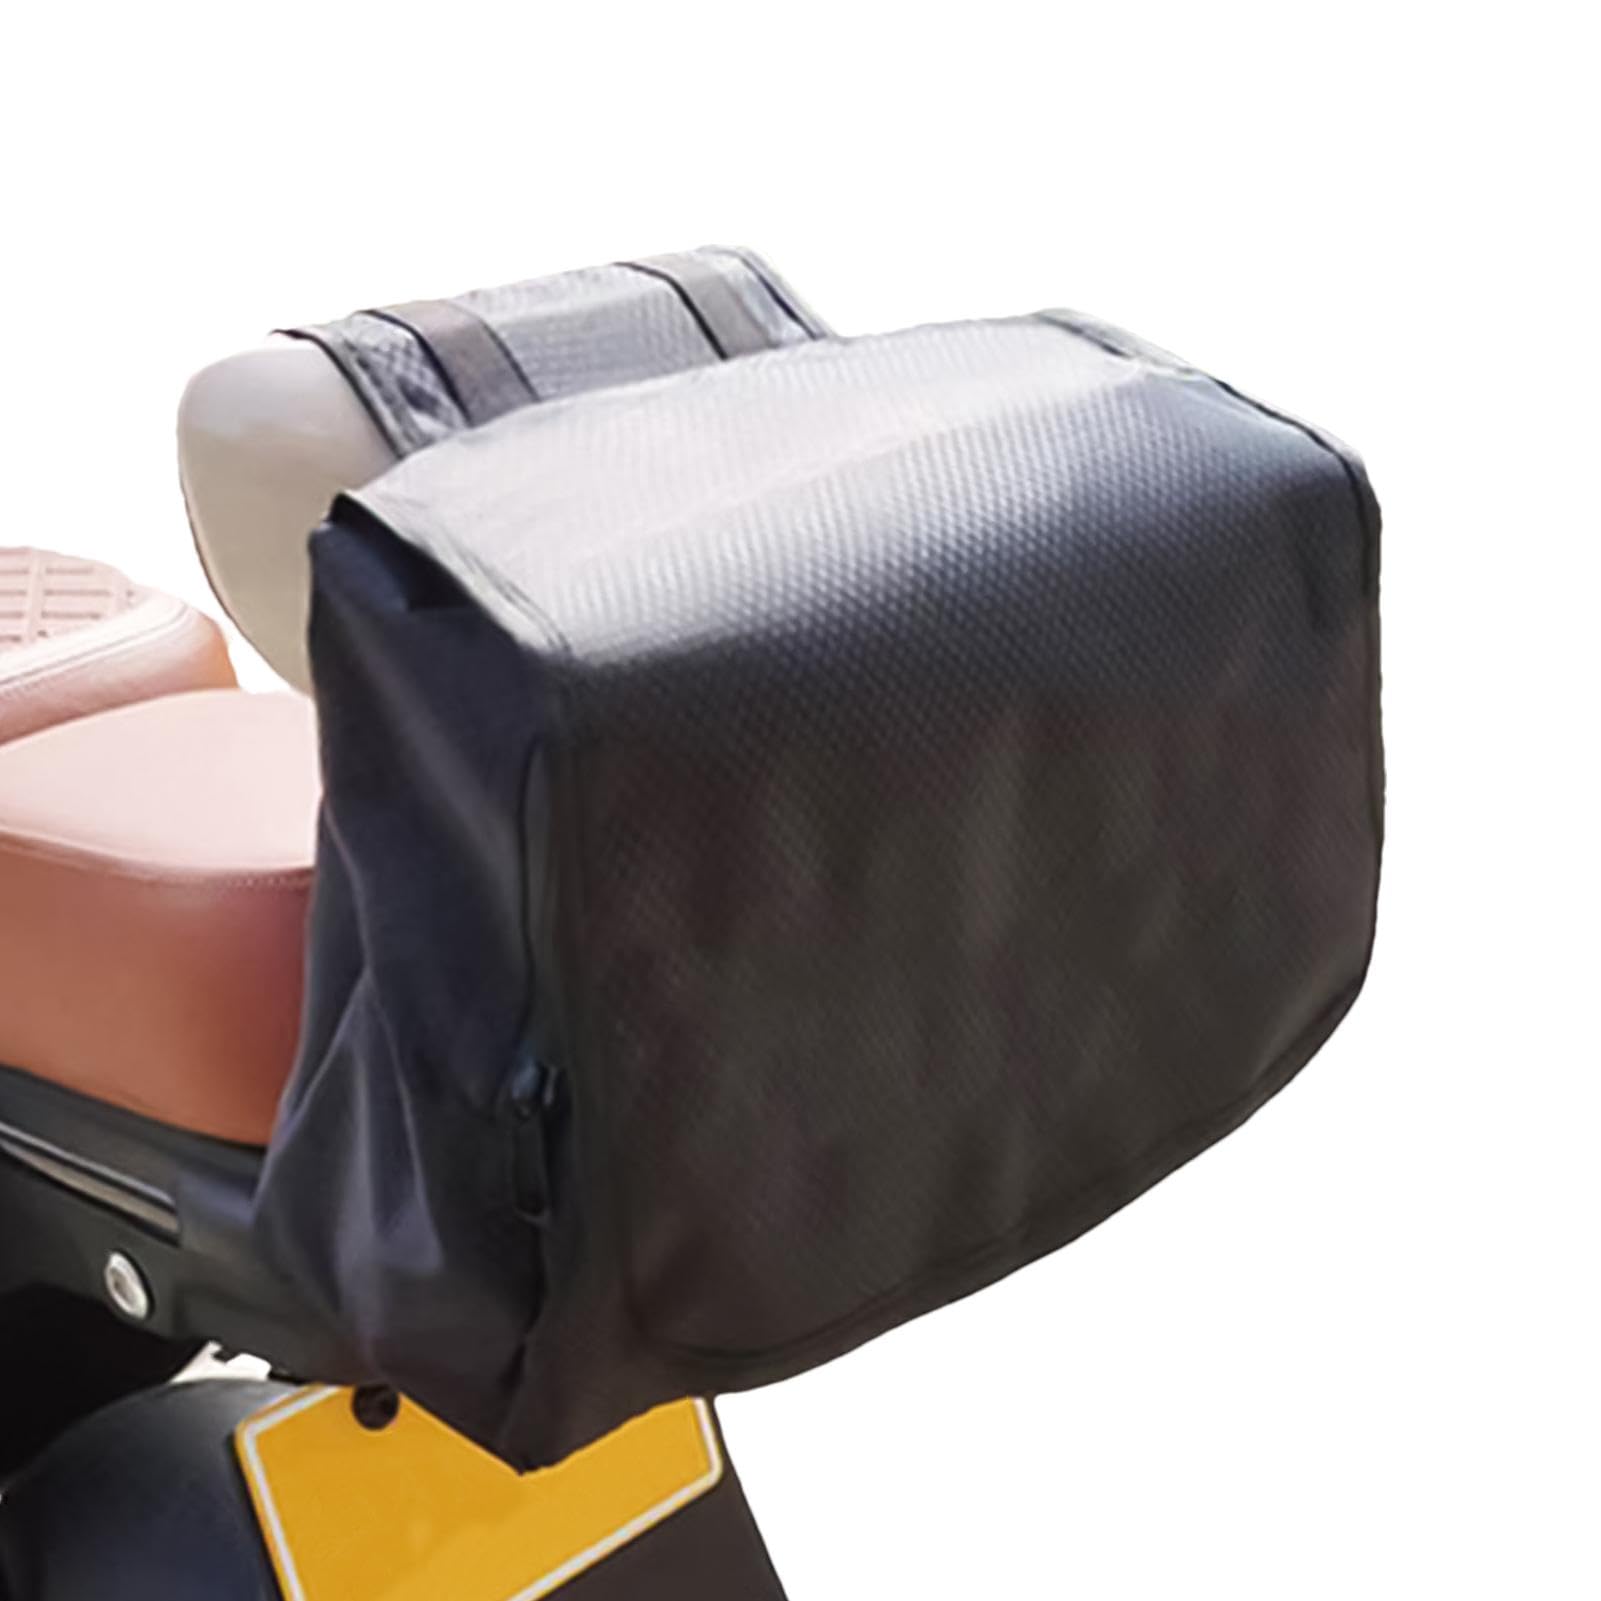 Motorroller-Kofferraumtaschen, Elektroroller-Taschenaufbewahrung - Rollertasche Cargotasche,Motorrad-Hecktasche mit großem Fassungsvermögen, wasserdichte Gepäckträgertasche, Kofferraumtasche, Aufbewah von Generisch